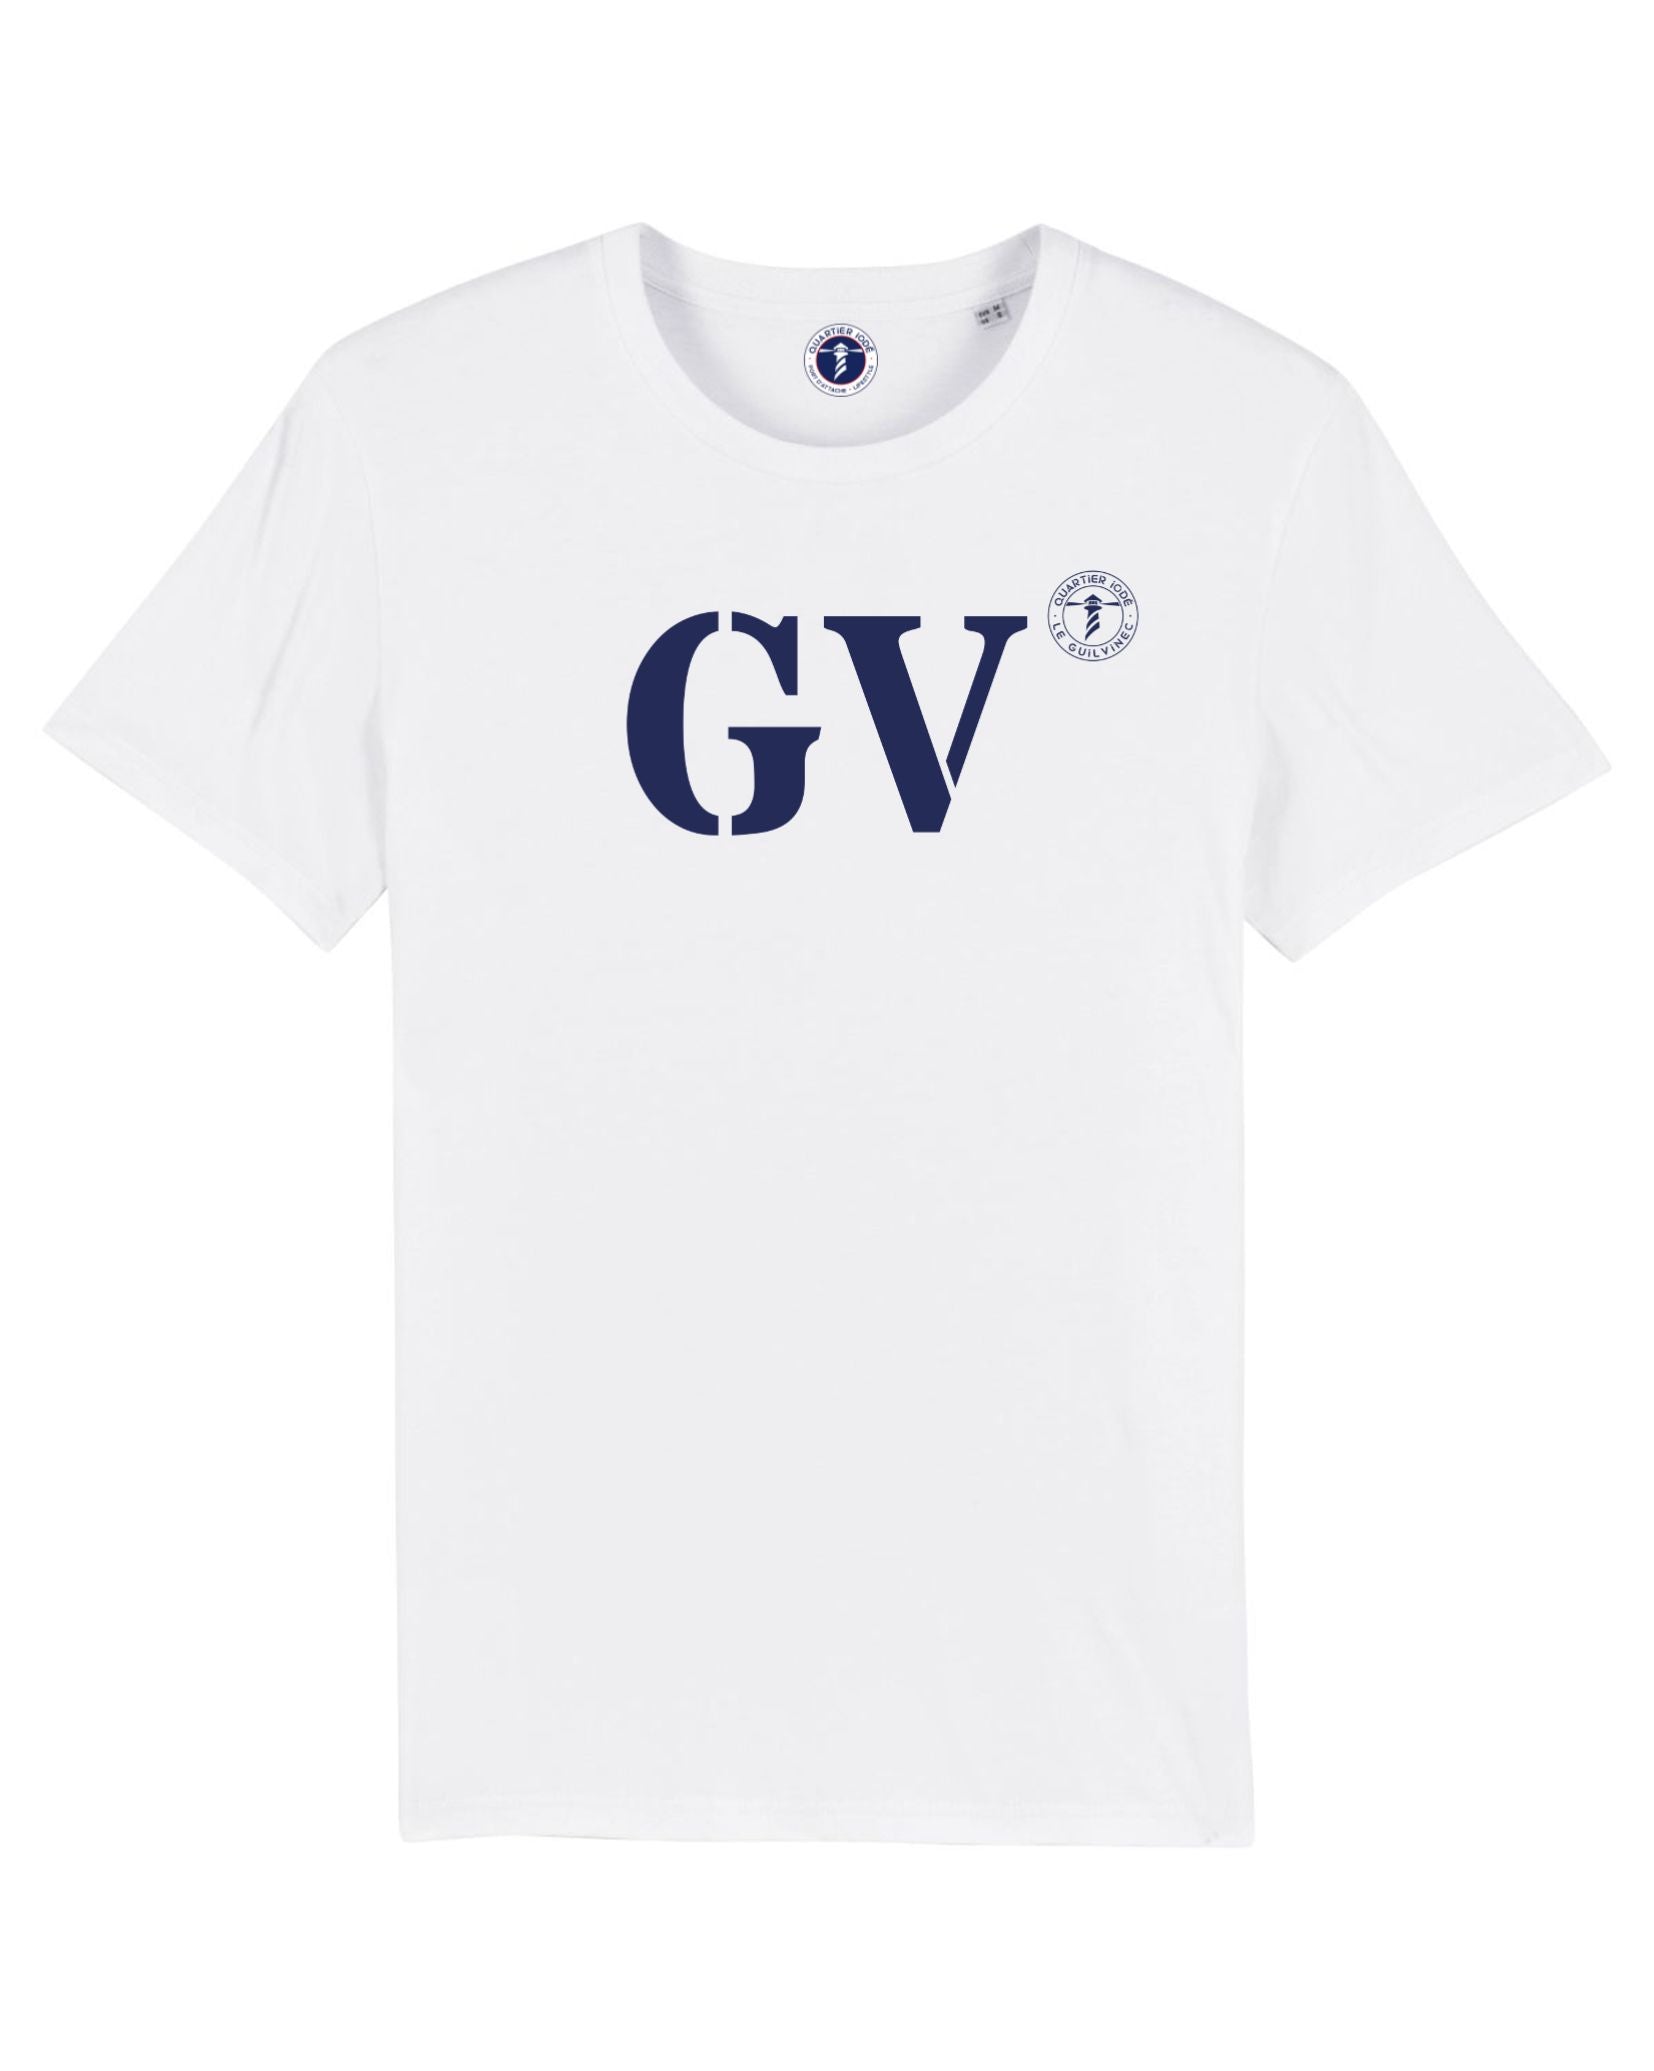 GV pour Le Guilvinec, en Bretagne. Imprimé sur Tshirt blanc et bleu, un bon basic de chez Quartier Iodé, marque de vêtement bretonne 